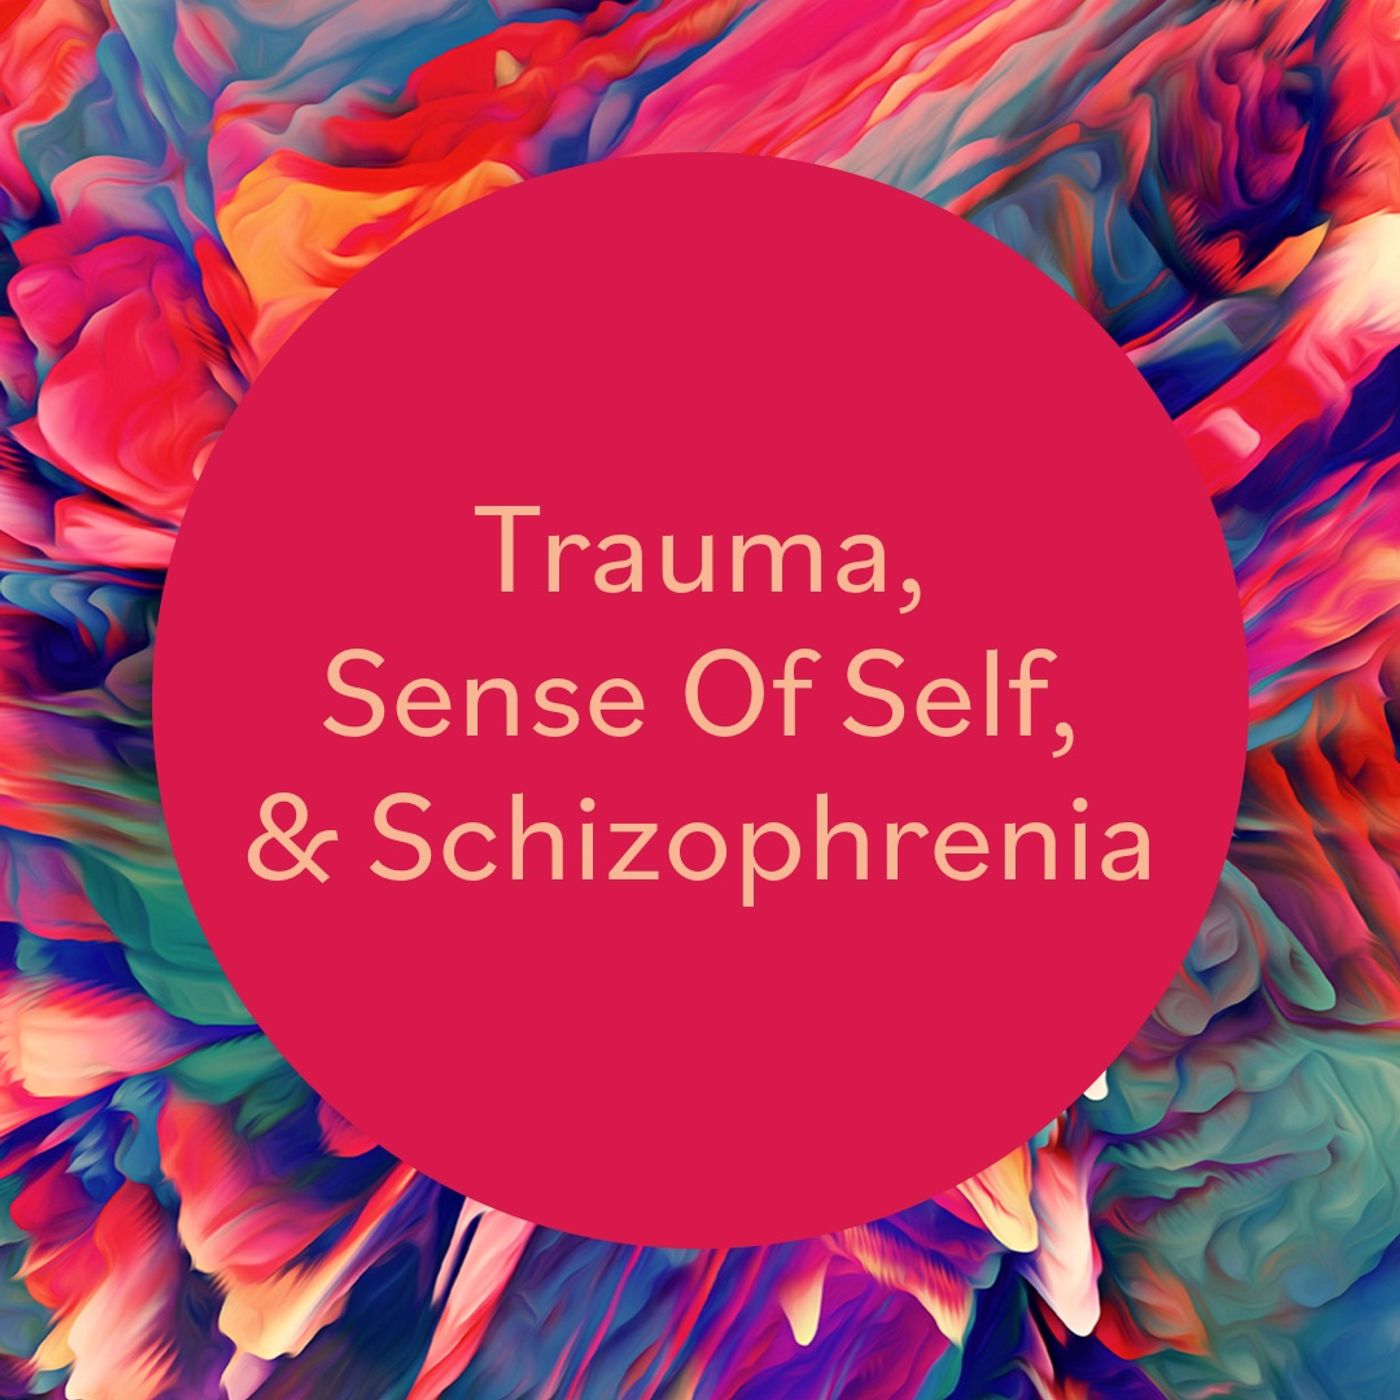 Trauma, Sense of Self, & Schizophrenia